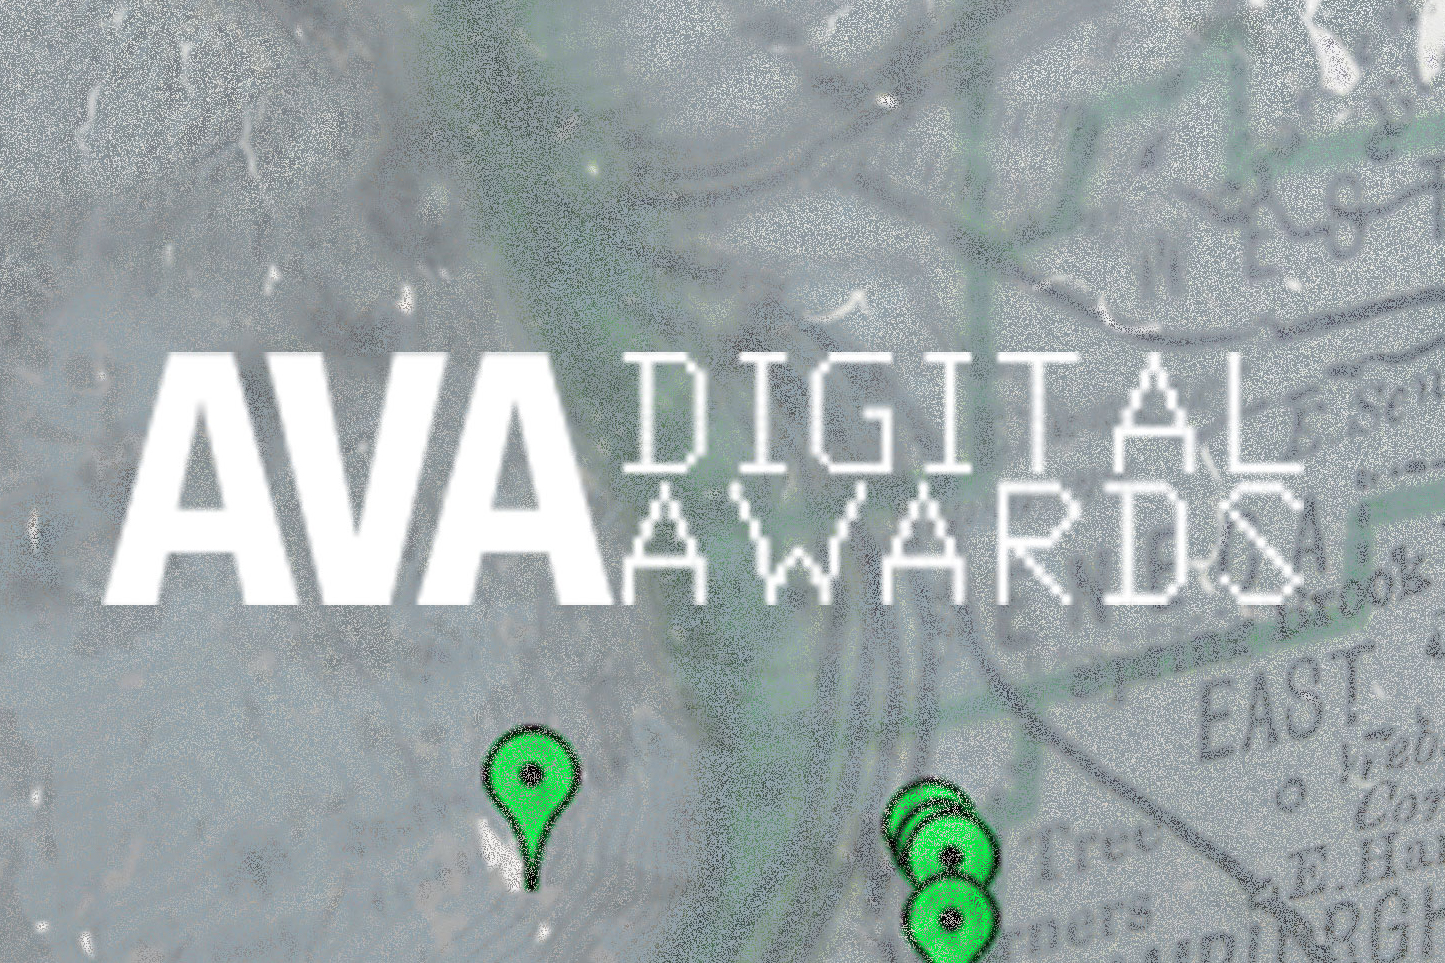 2017 AVA Digital Awards.